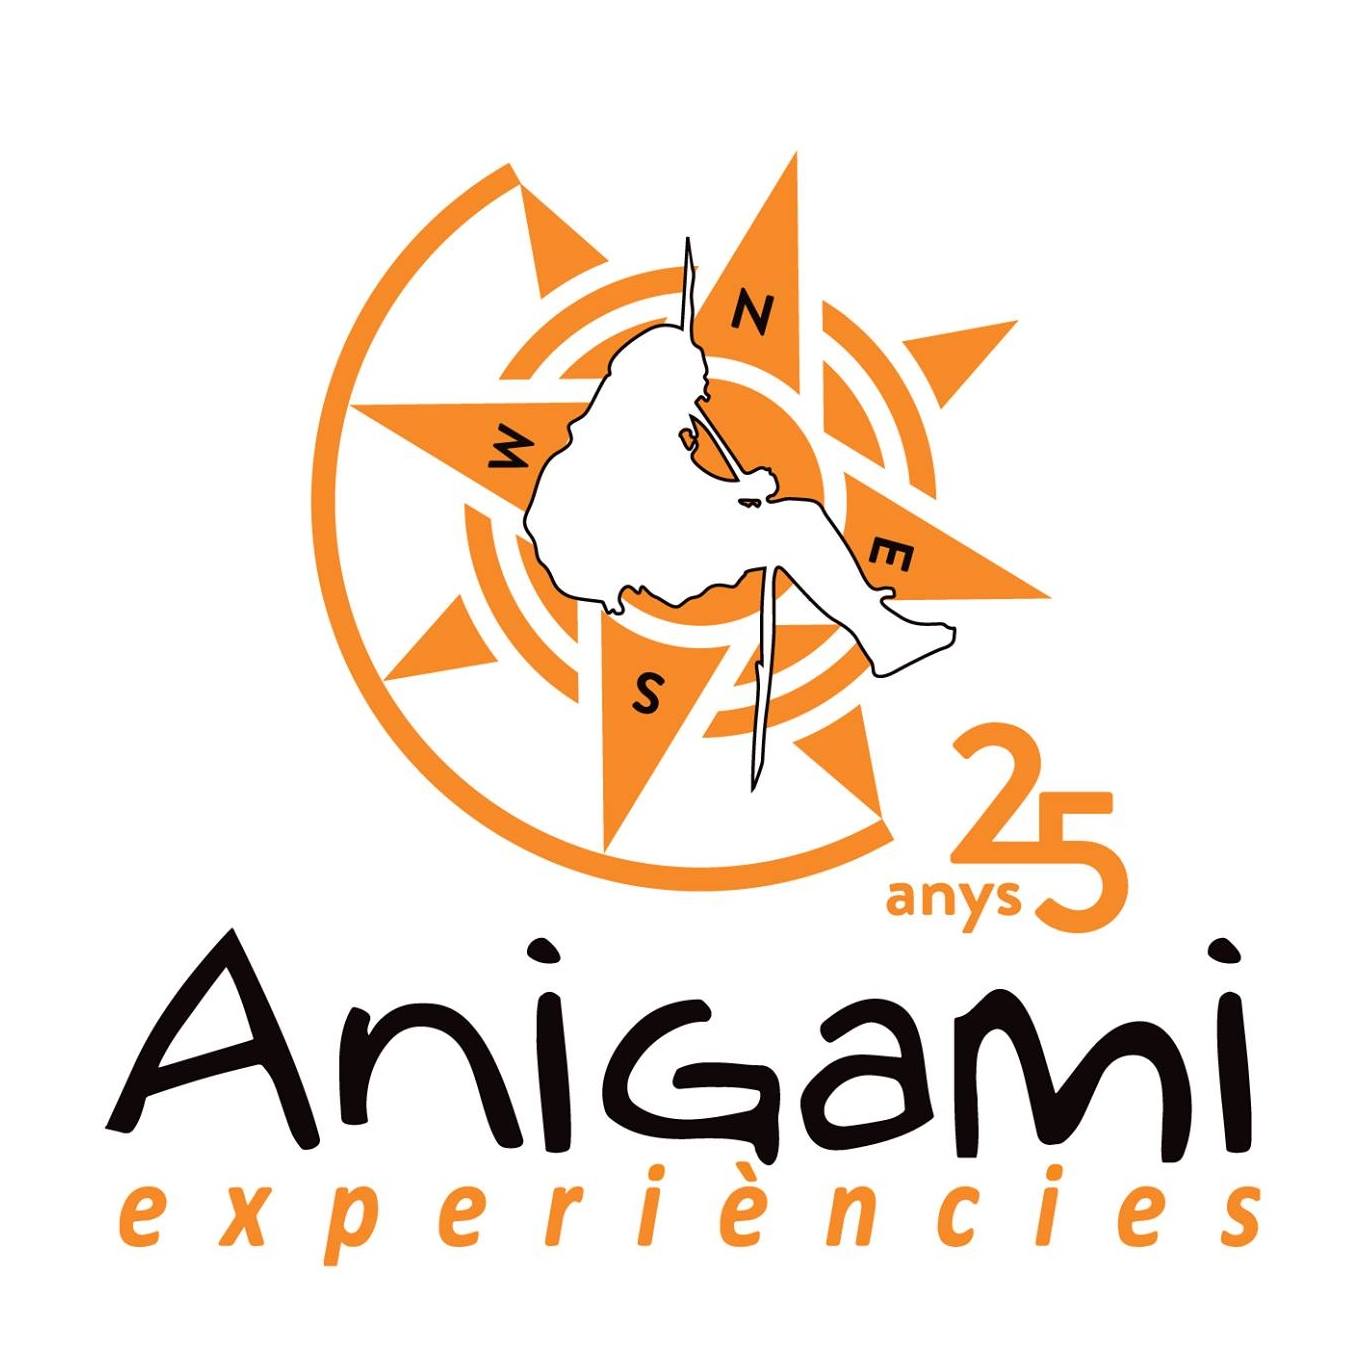 Anigami